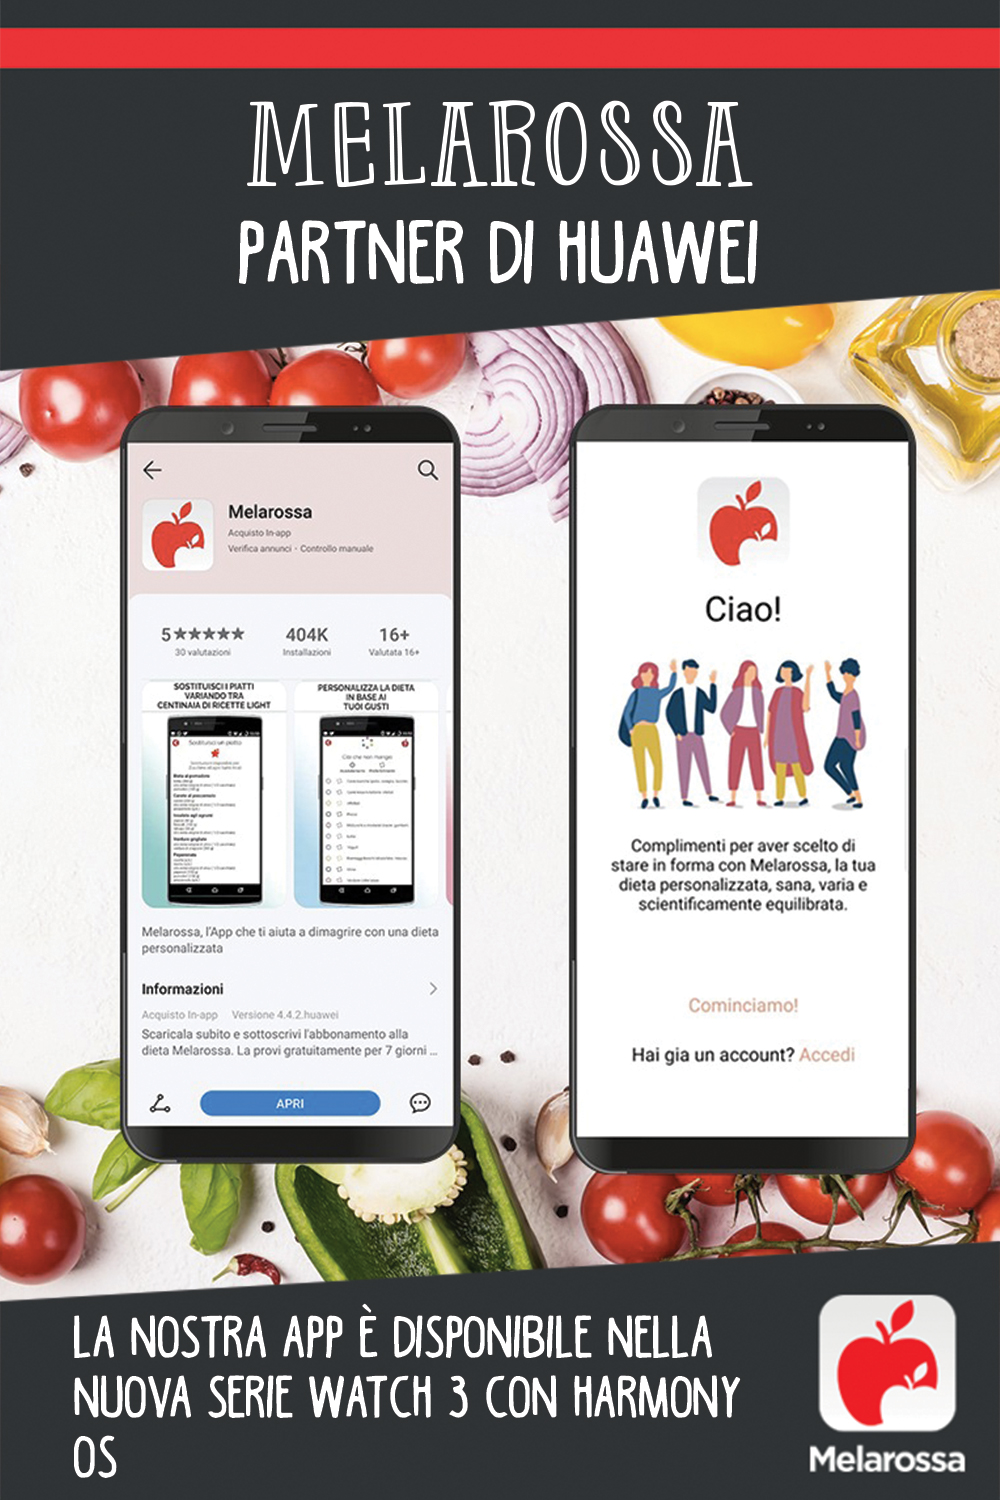 Melarossa partner di Huawei: la nostra app è disponibile nella nuova serie Watch 3 con HarmonyOs